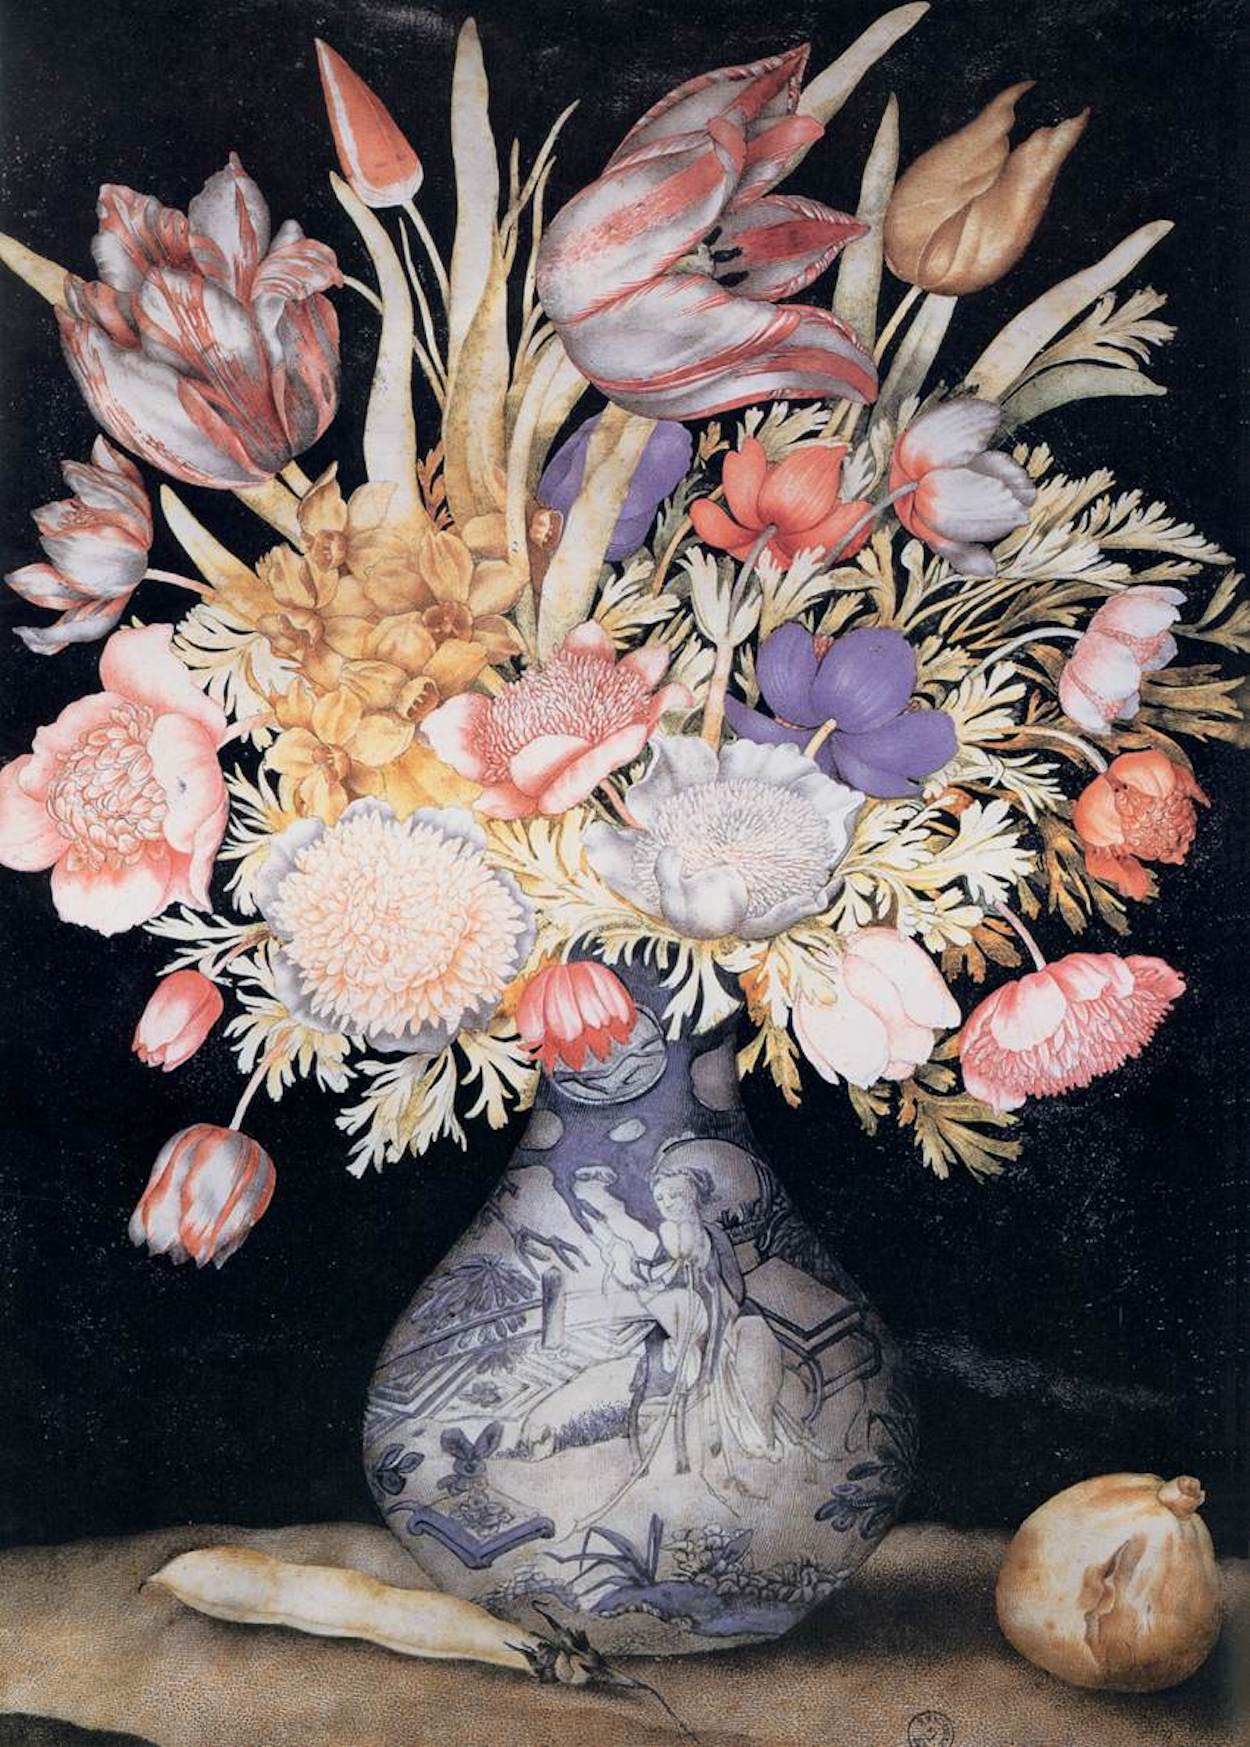 Vaso cinese con fiori e frutti by Giovanna Garzoni - 1641-1652 circa - 51 x 36,9 cm 